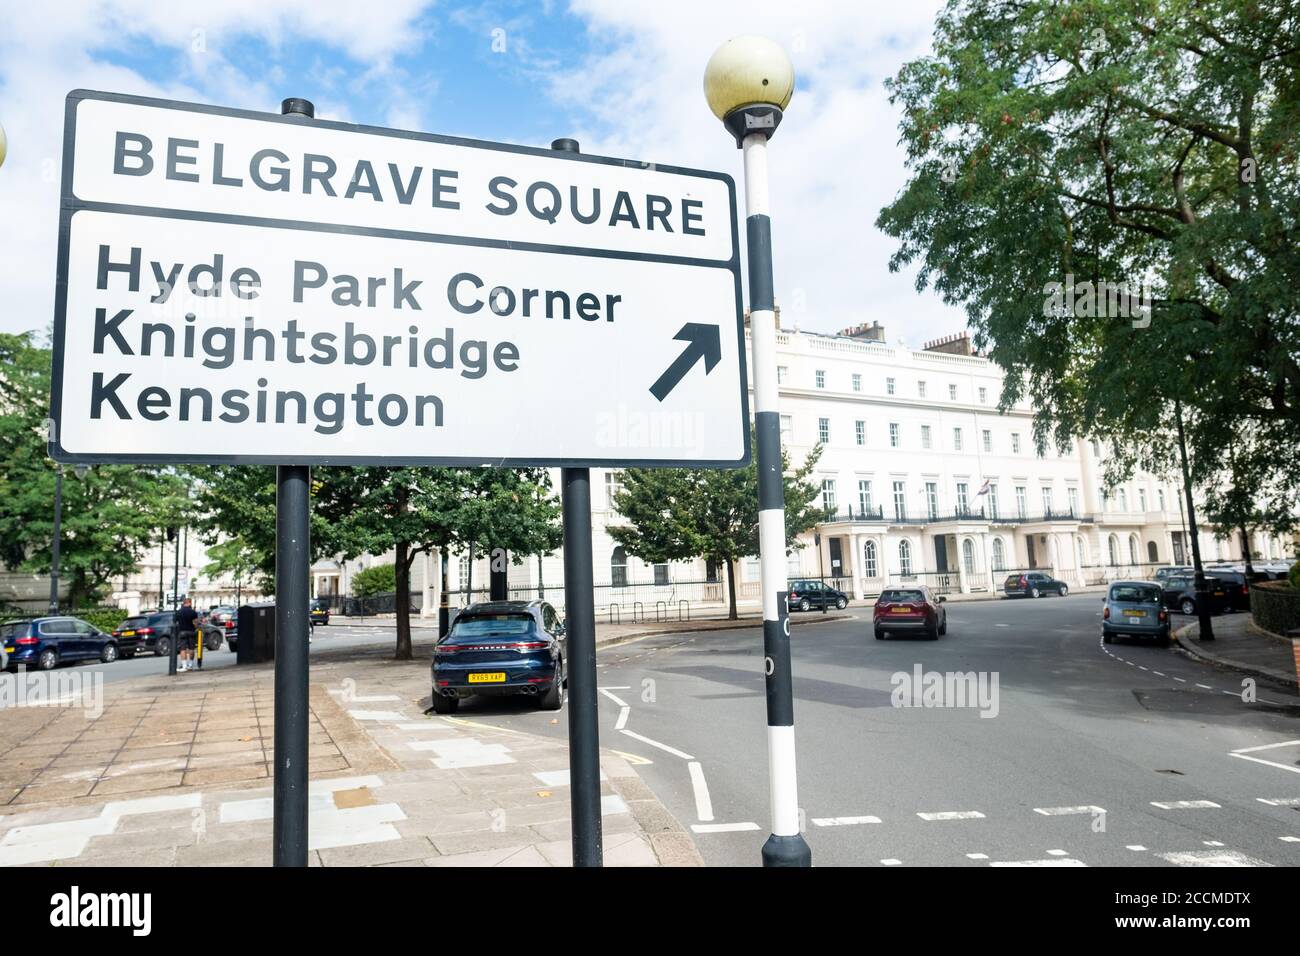 Londres- Belgrave Square, une place de jardin du XIXe siècle dans la région de Belgravia / Knightsbridge remarquable pour ses nombreux bâtiments d'ambassade et de consulat Banque D'Images